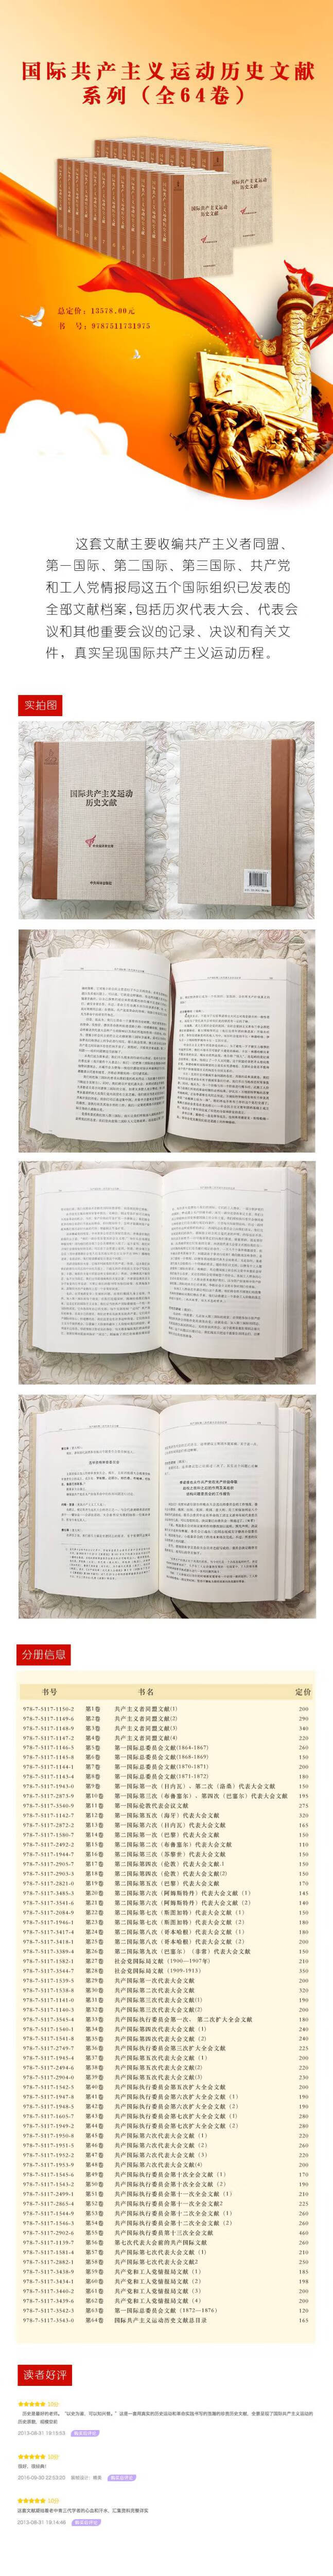 《国际共产主义运动历史文献 第7卷(第一国际总委员会文献1870-1871)》